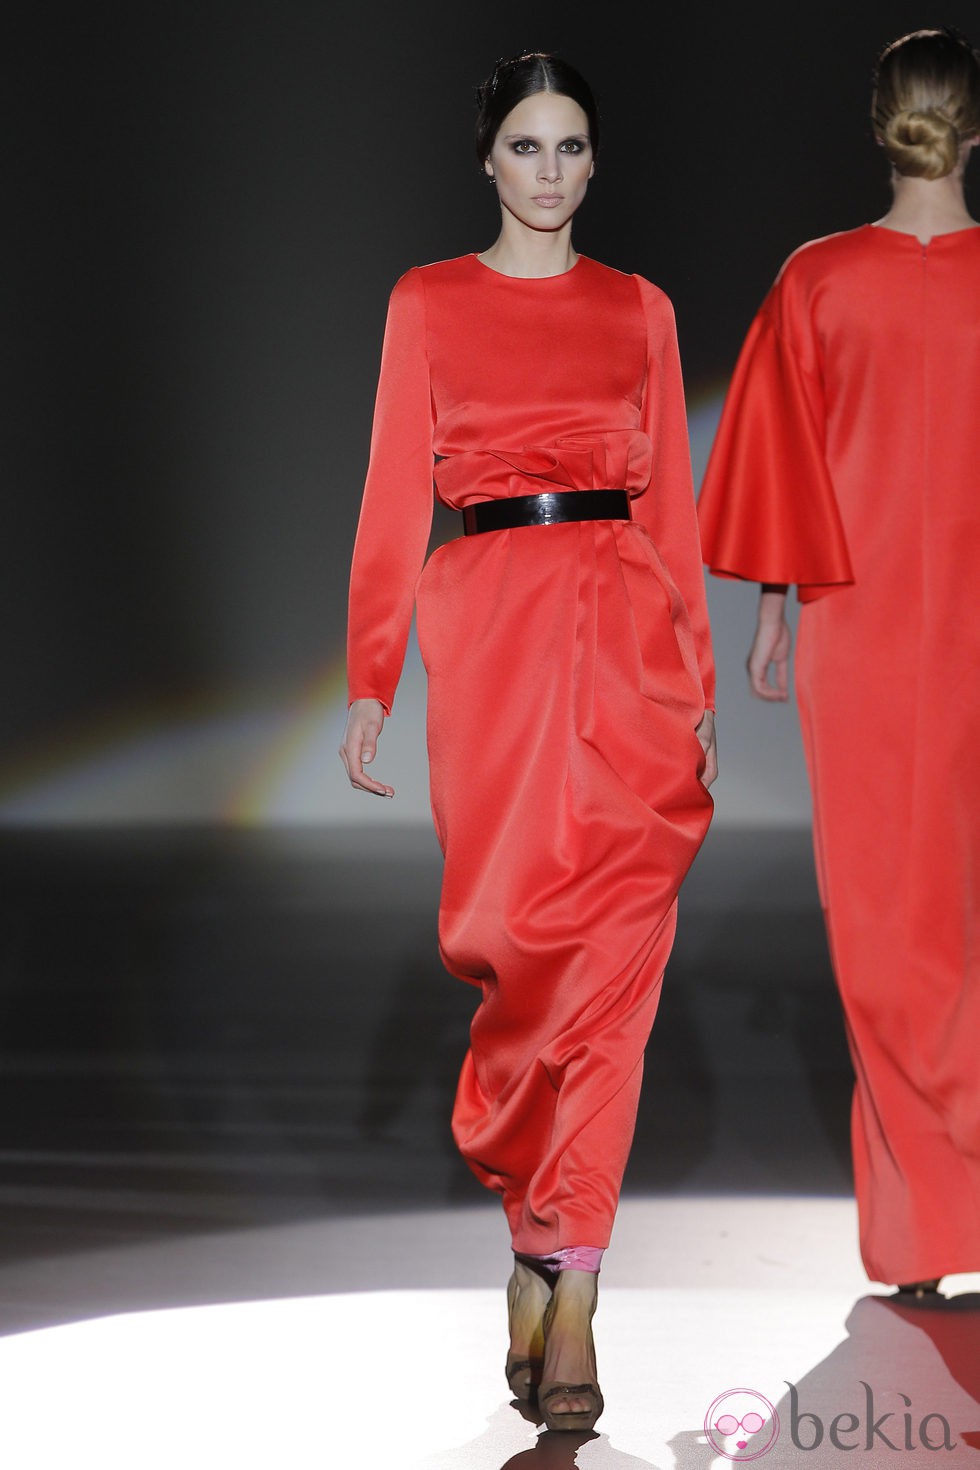 Vestido largo de la colección otoño/invierno 2013/2014 de Juana Martín en Madrid Fashion Week